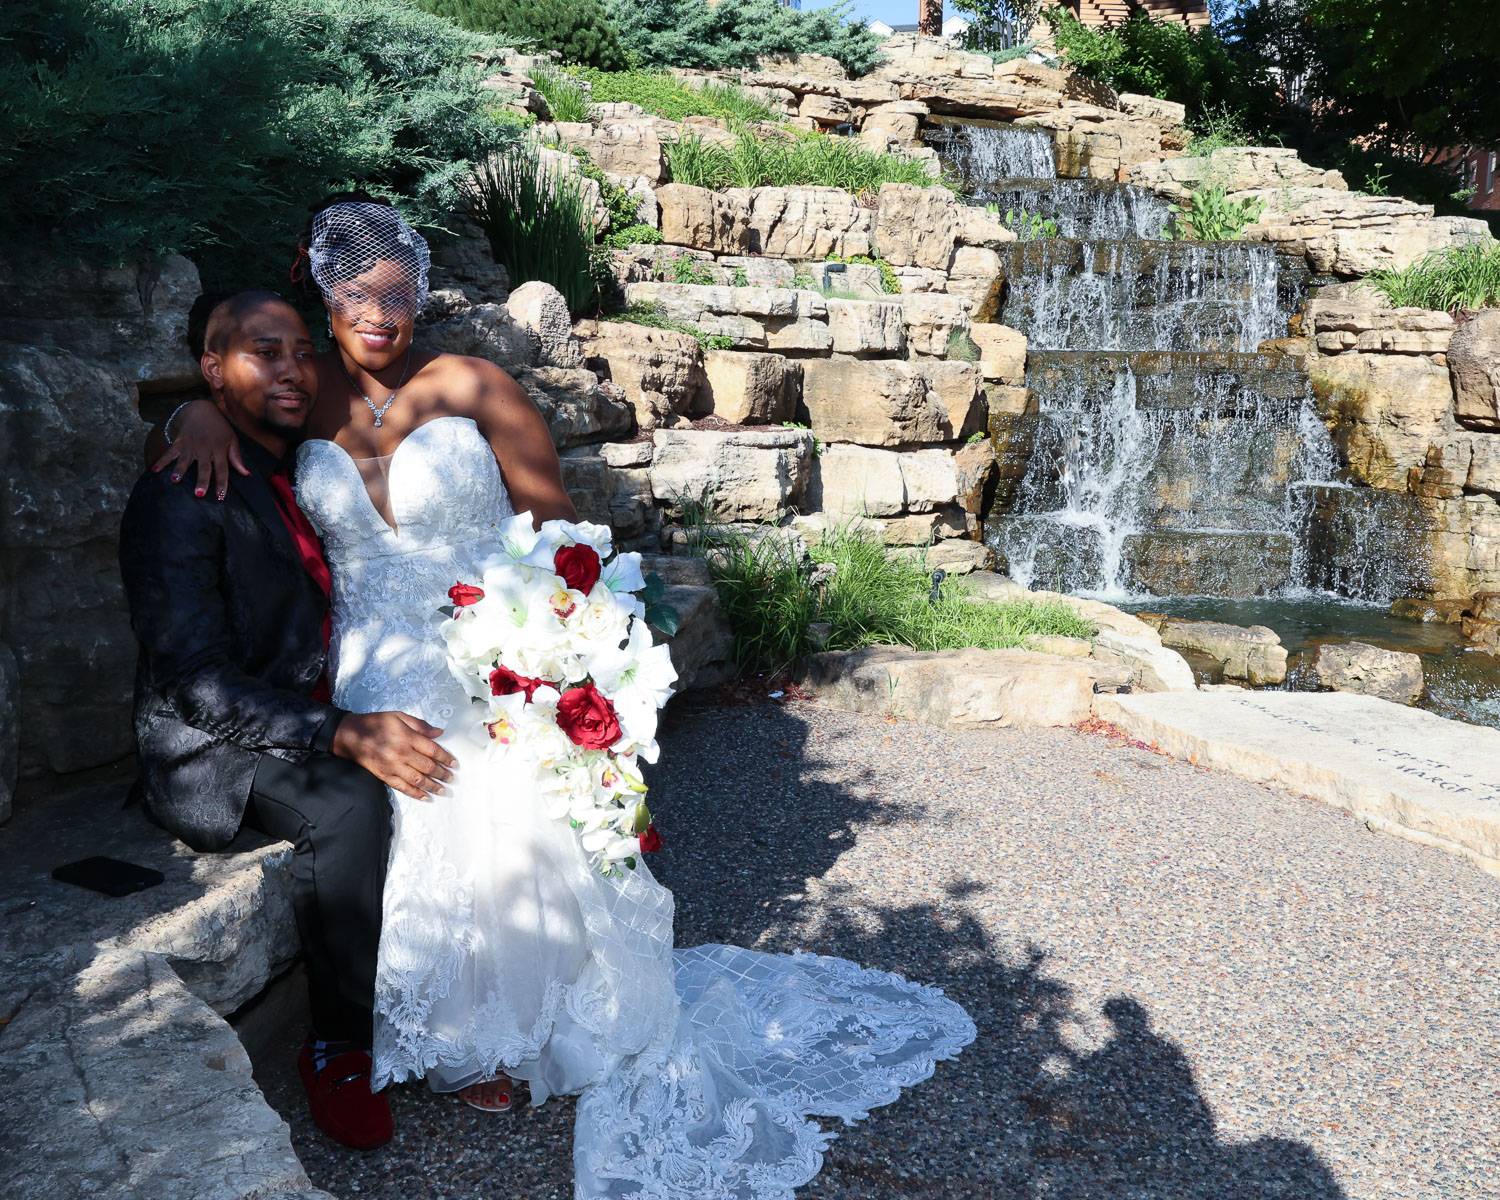 The newlyweds sitting near a waterfall